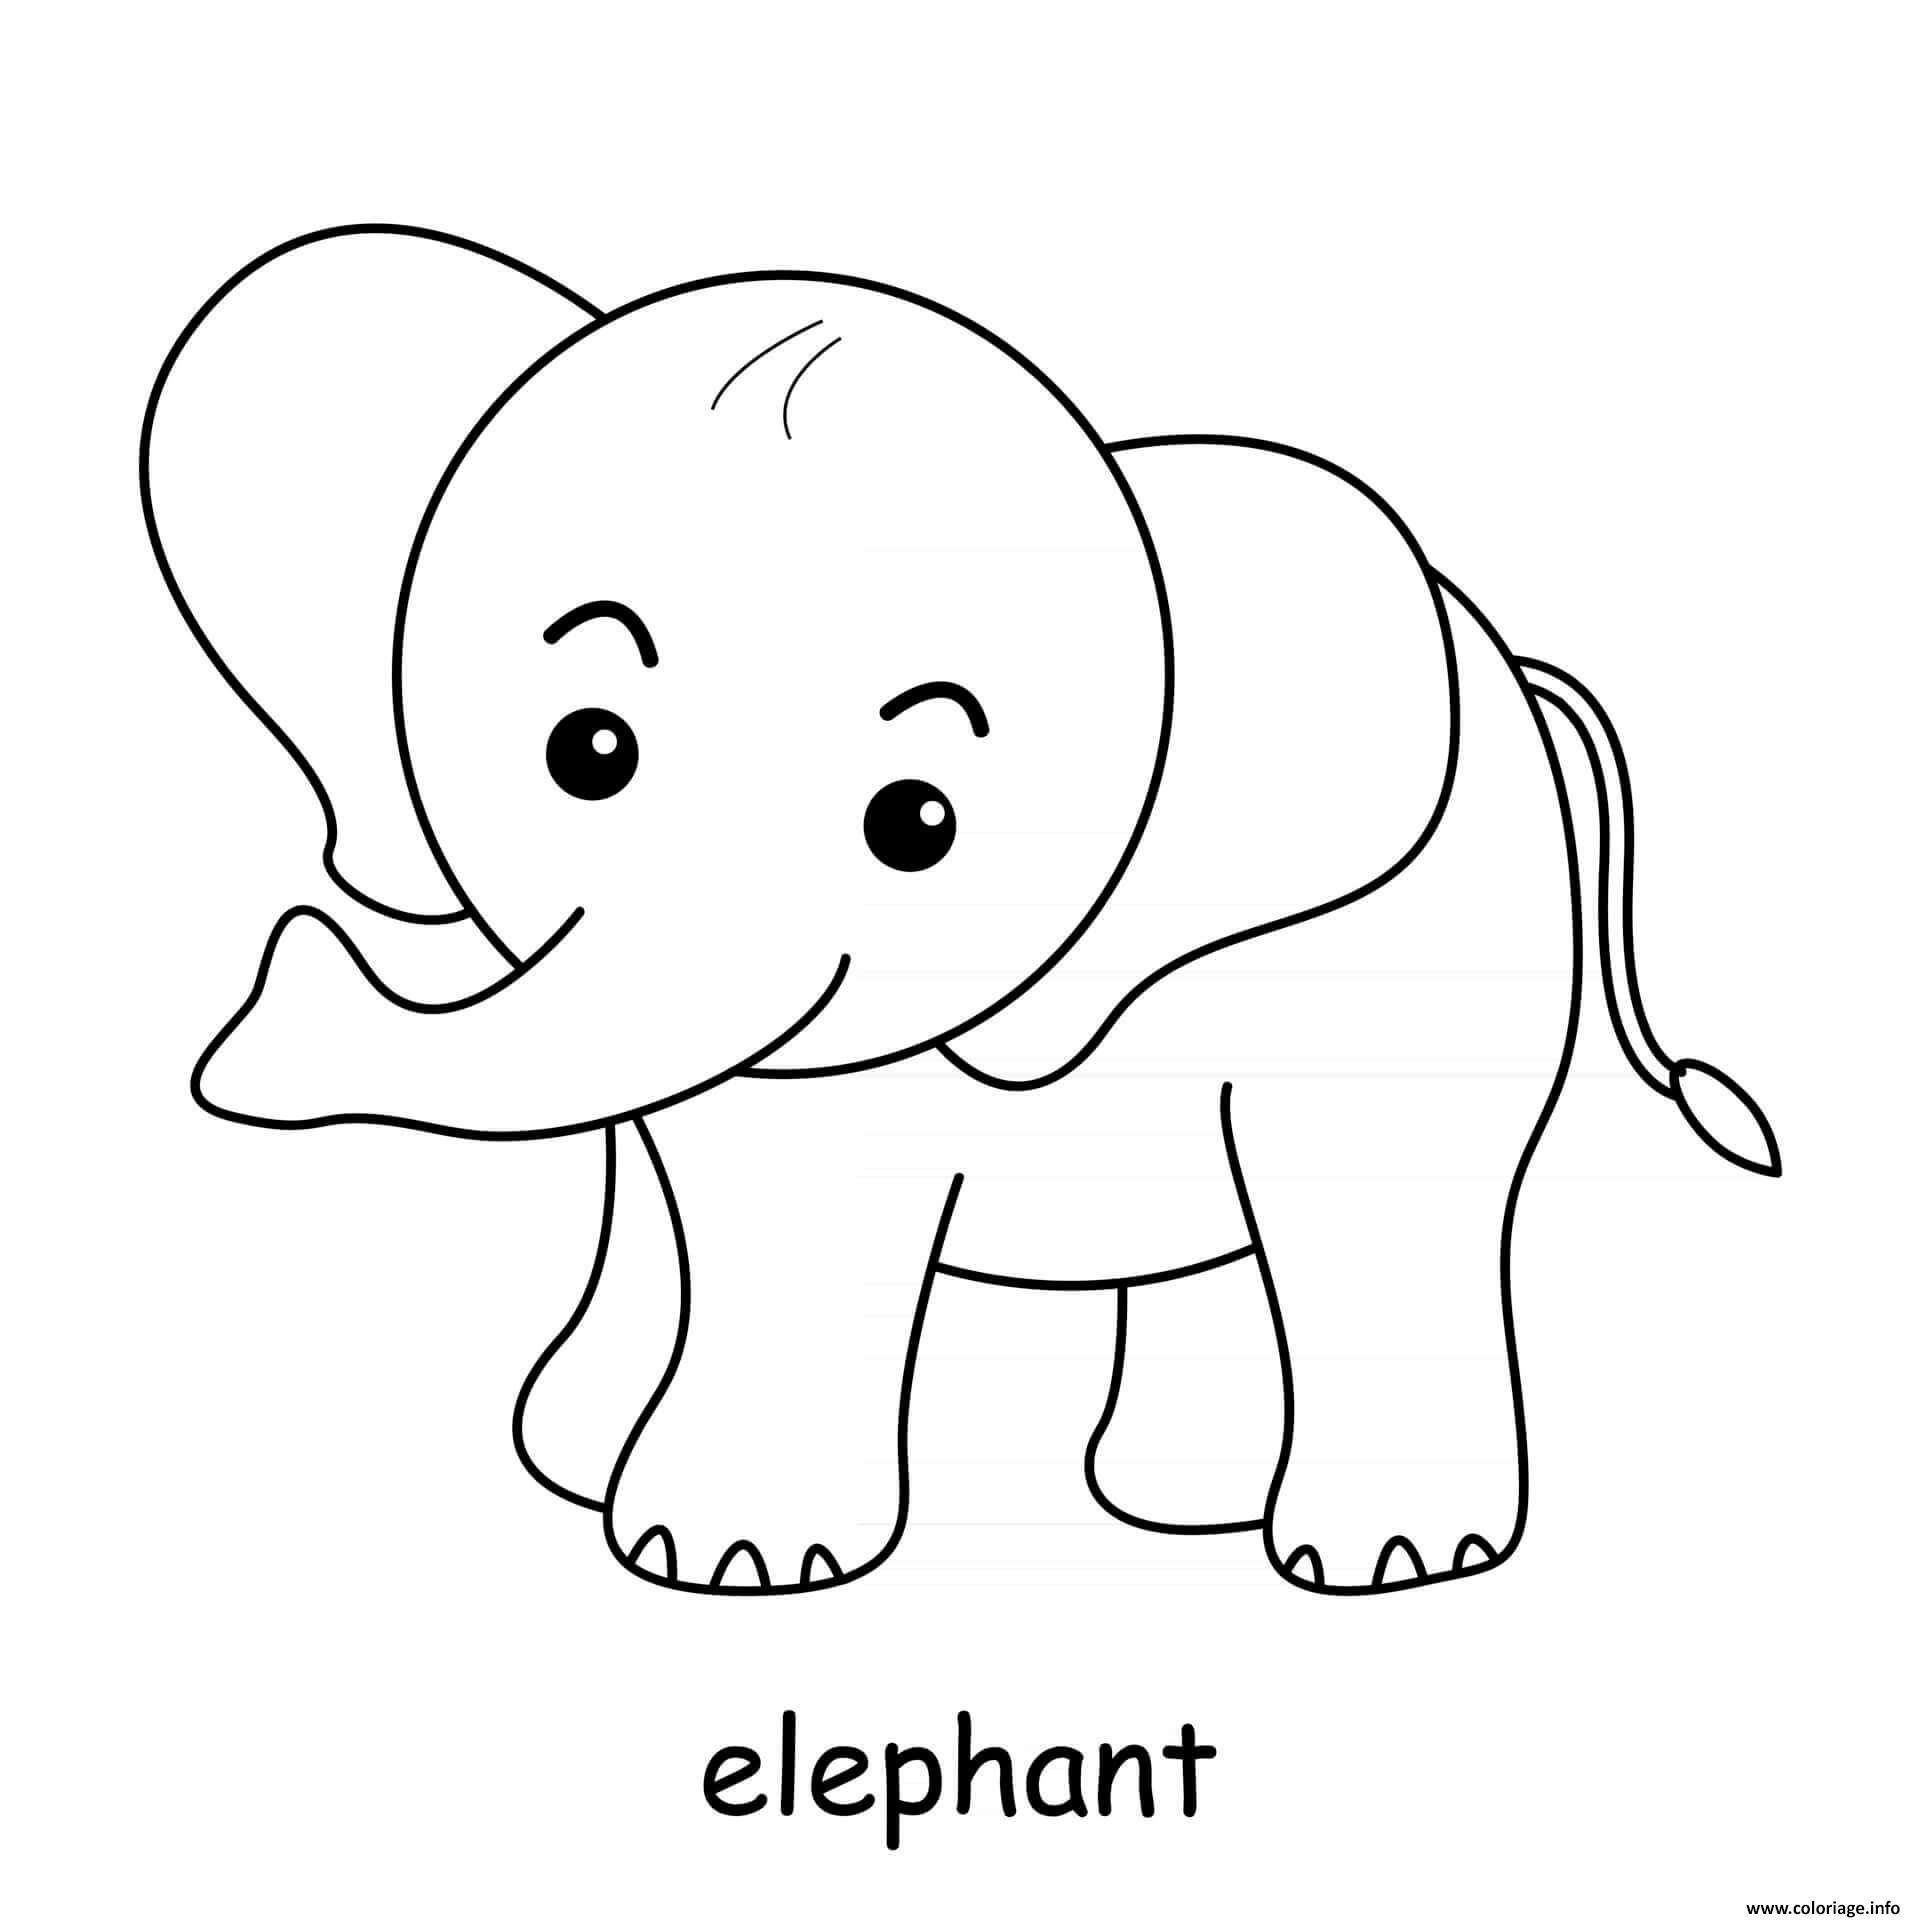 Elephant dessine